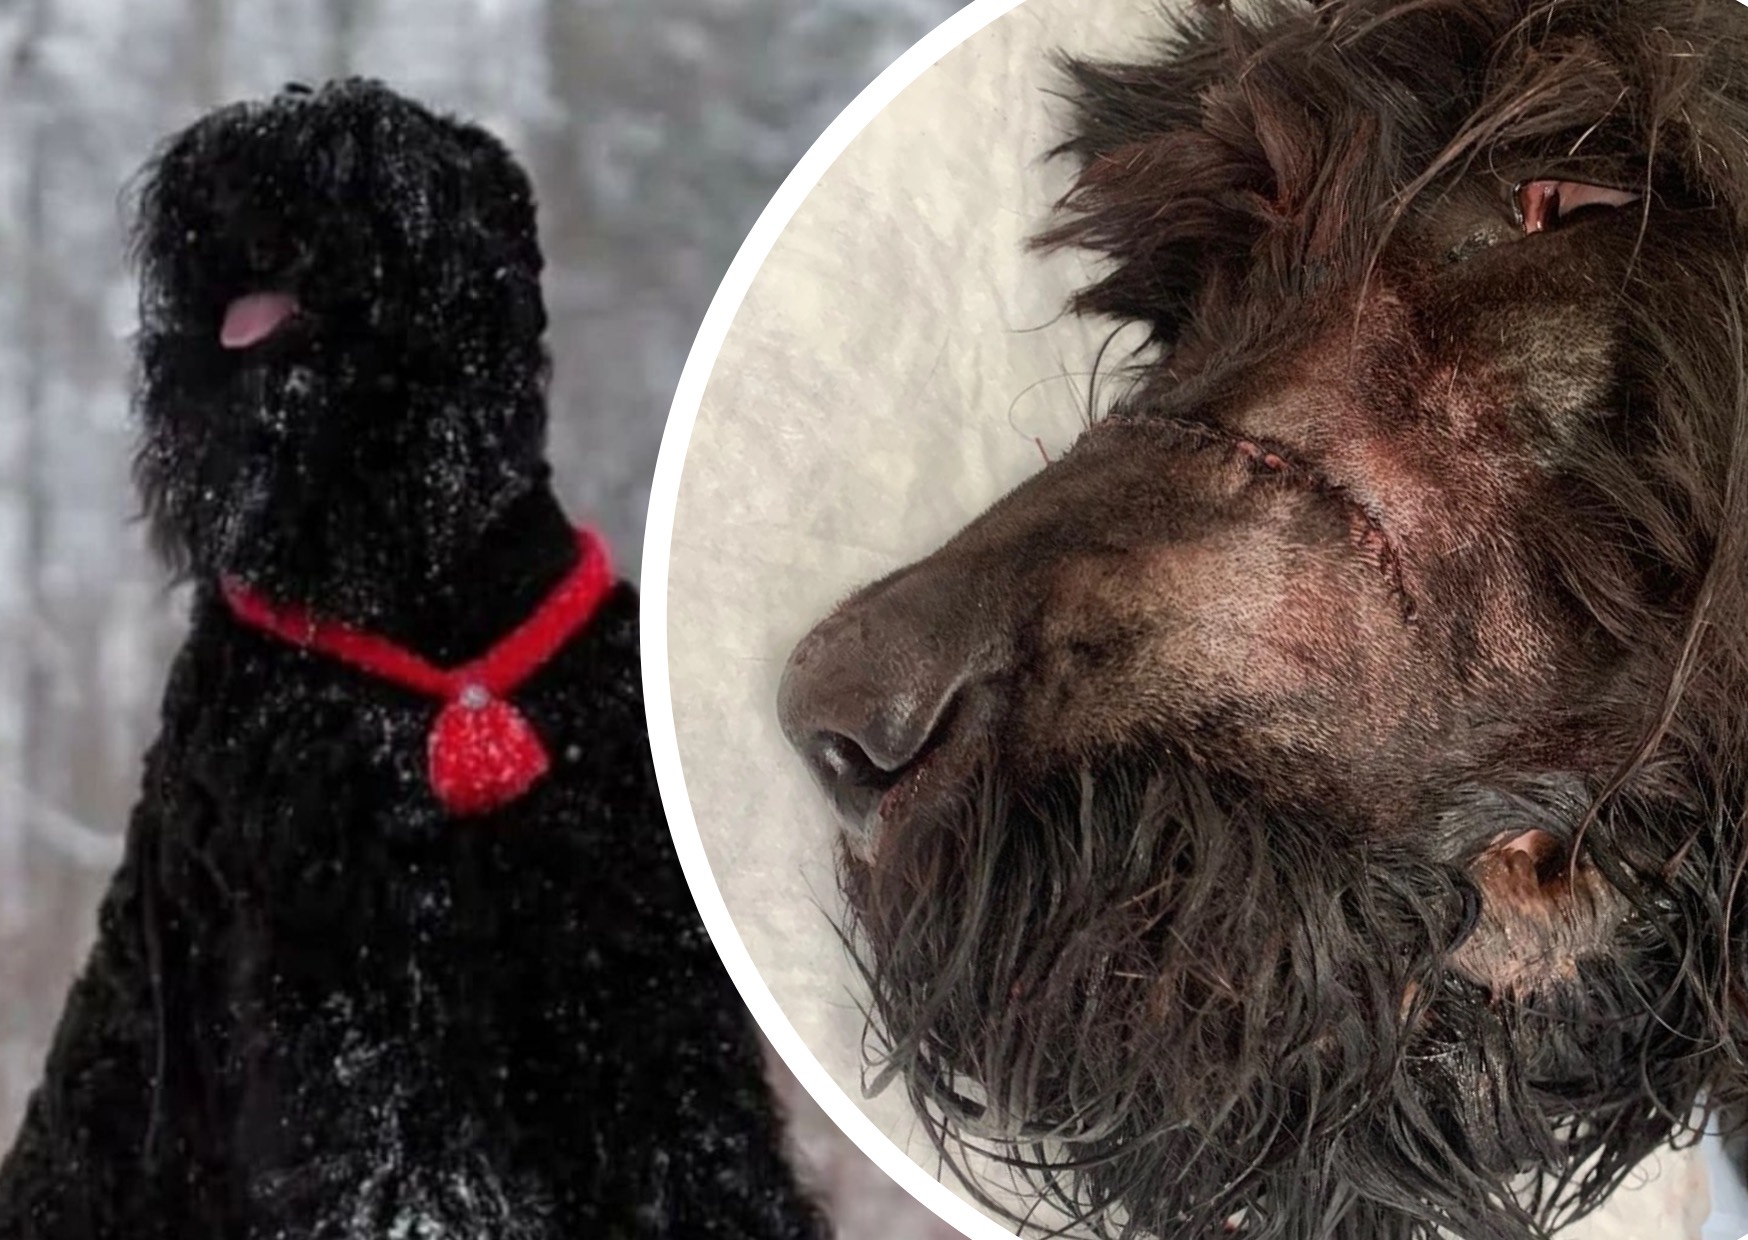 «Топором перебил переносицу»: в Рыбинске живодер покалечил соседскую собаку